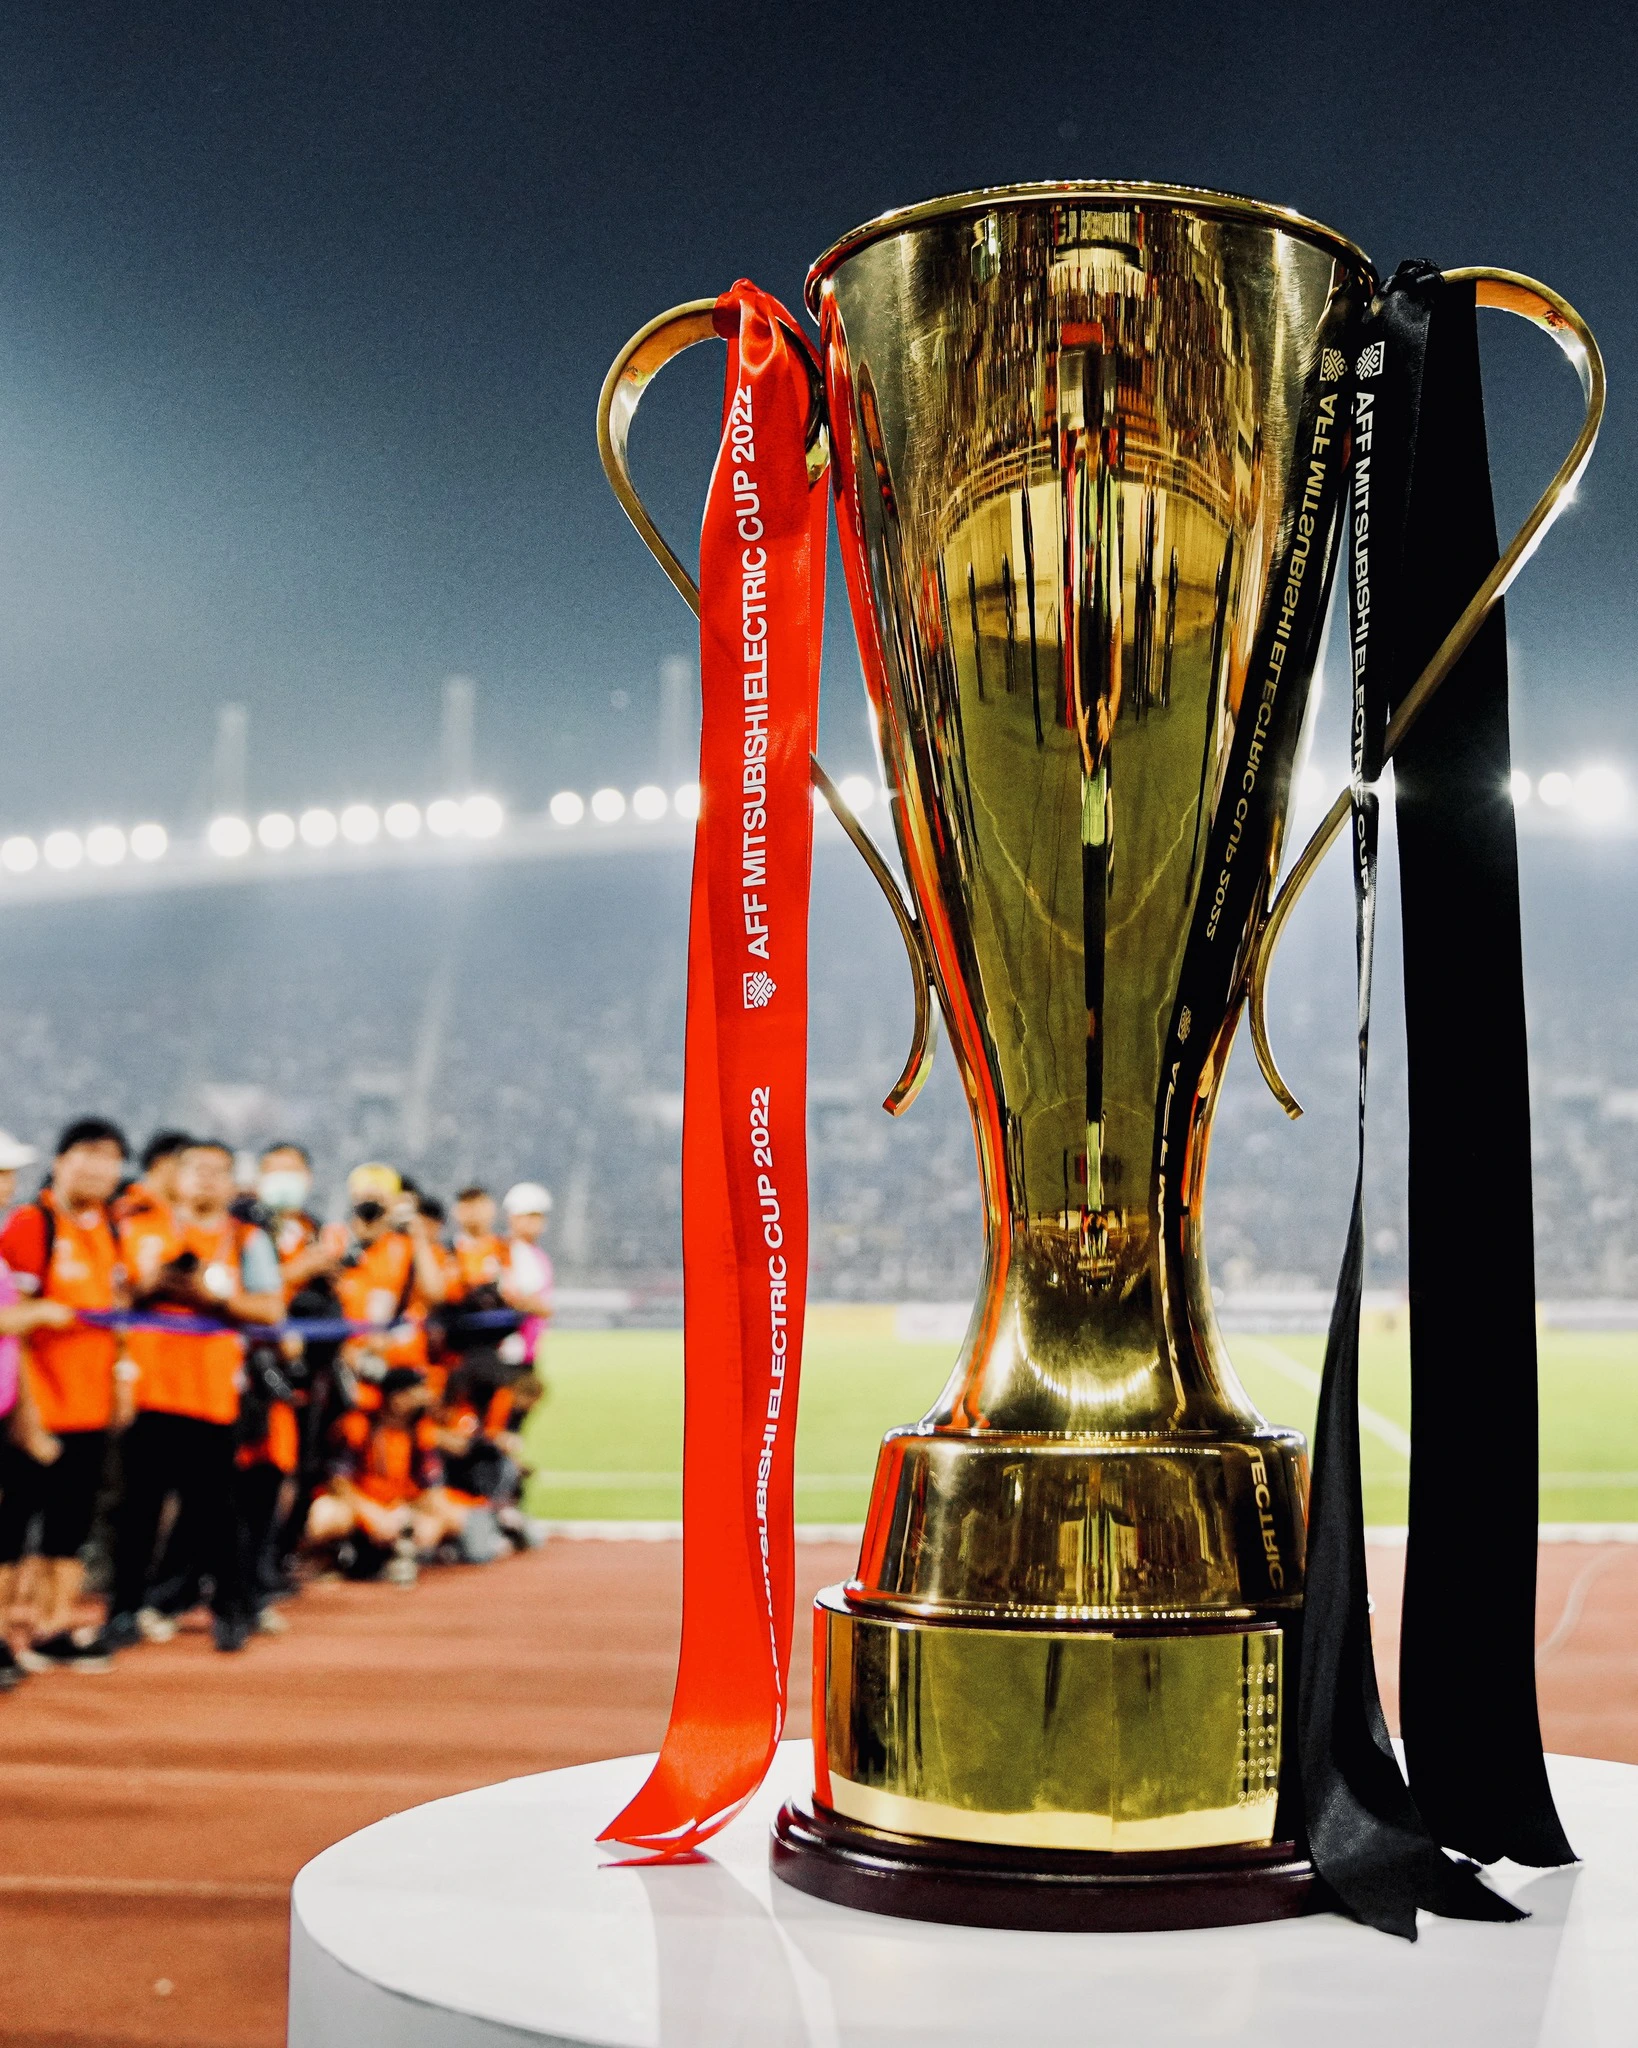 HLV Kim Sang Sik dự lễ bốc thăm AFF Cup 2024